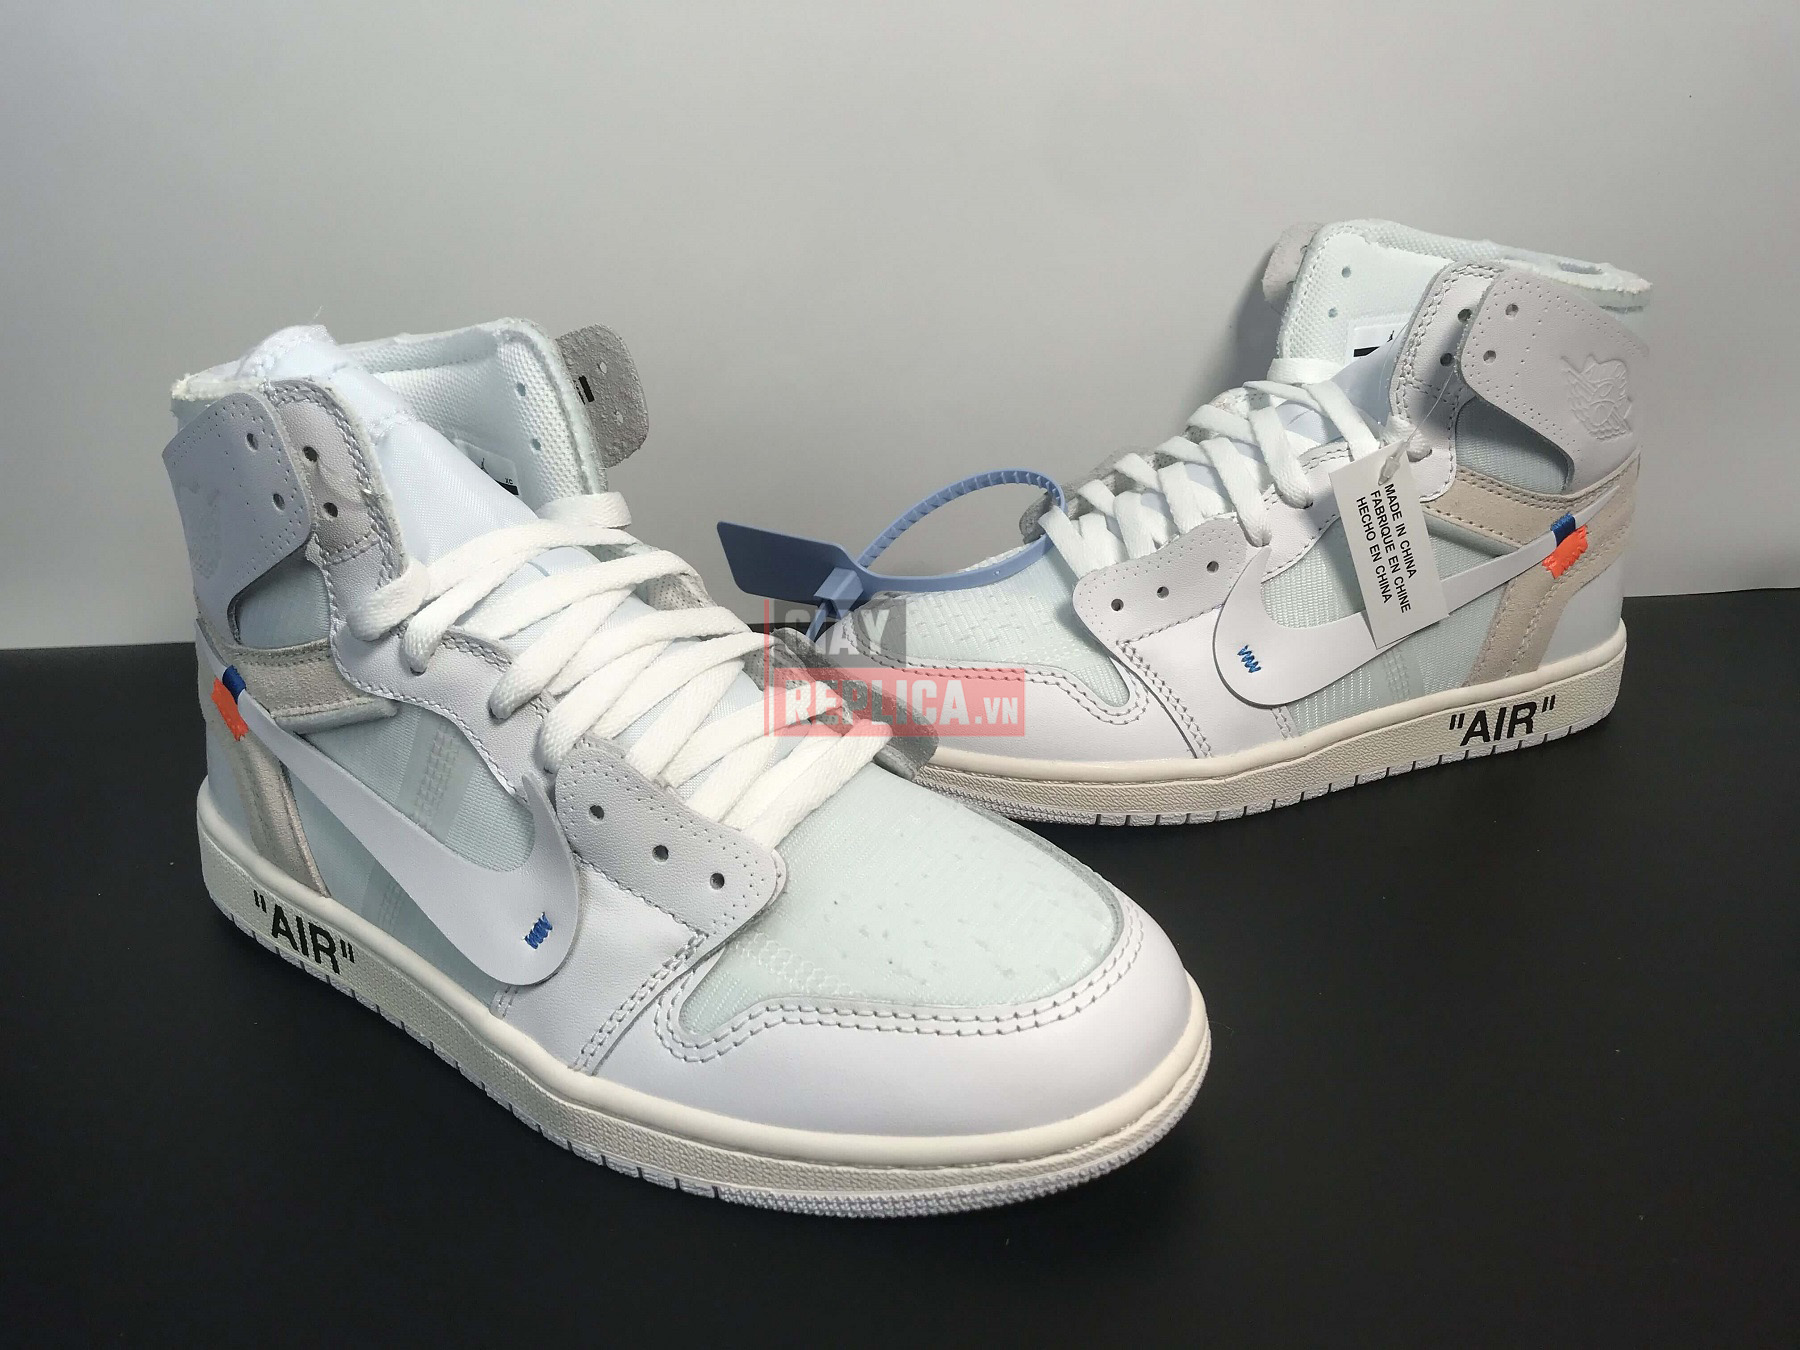 Giày Nike Air Jordan 1 Nrg Off White